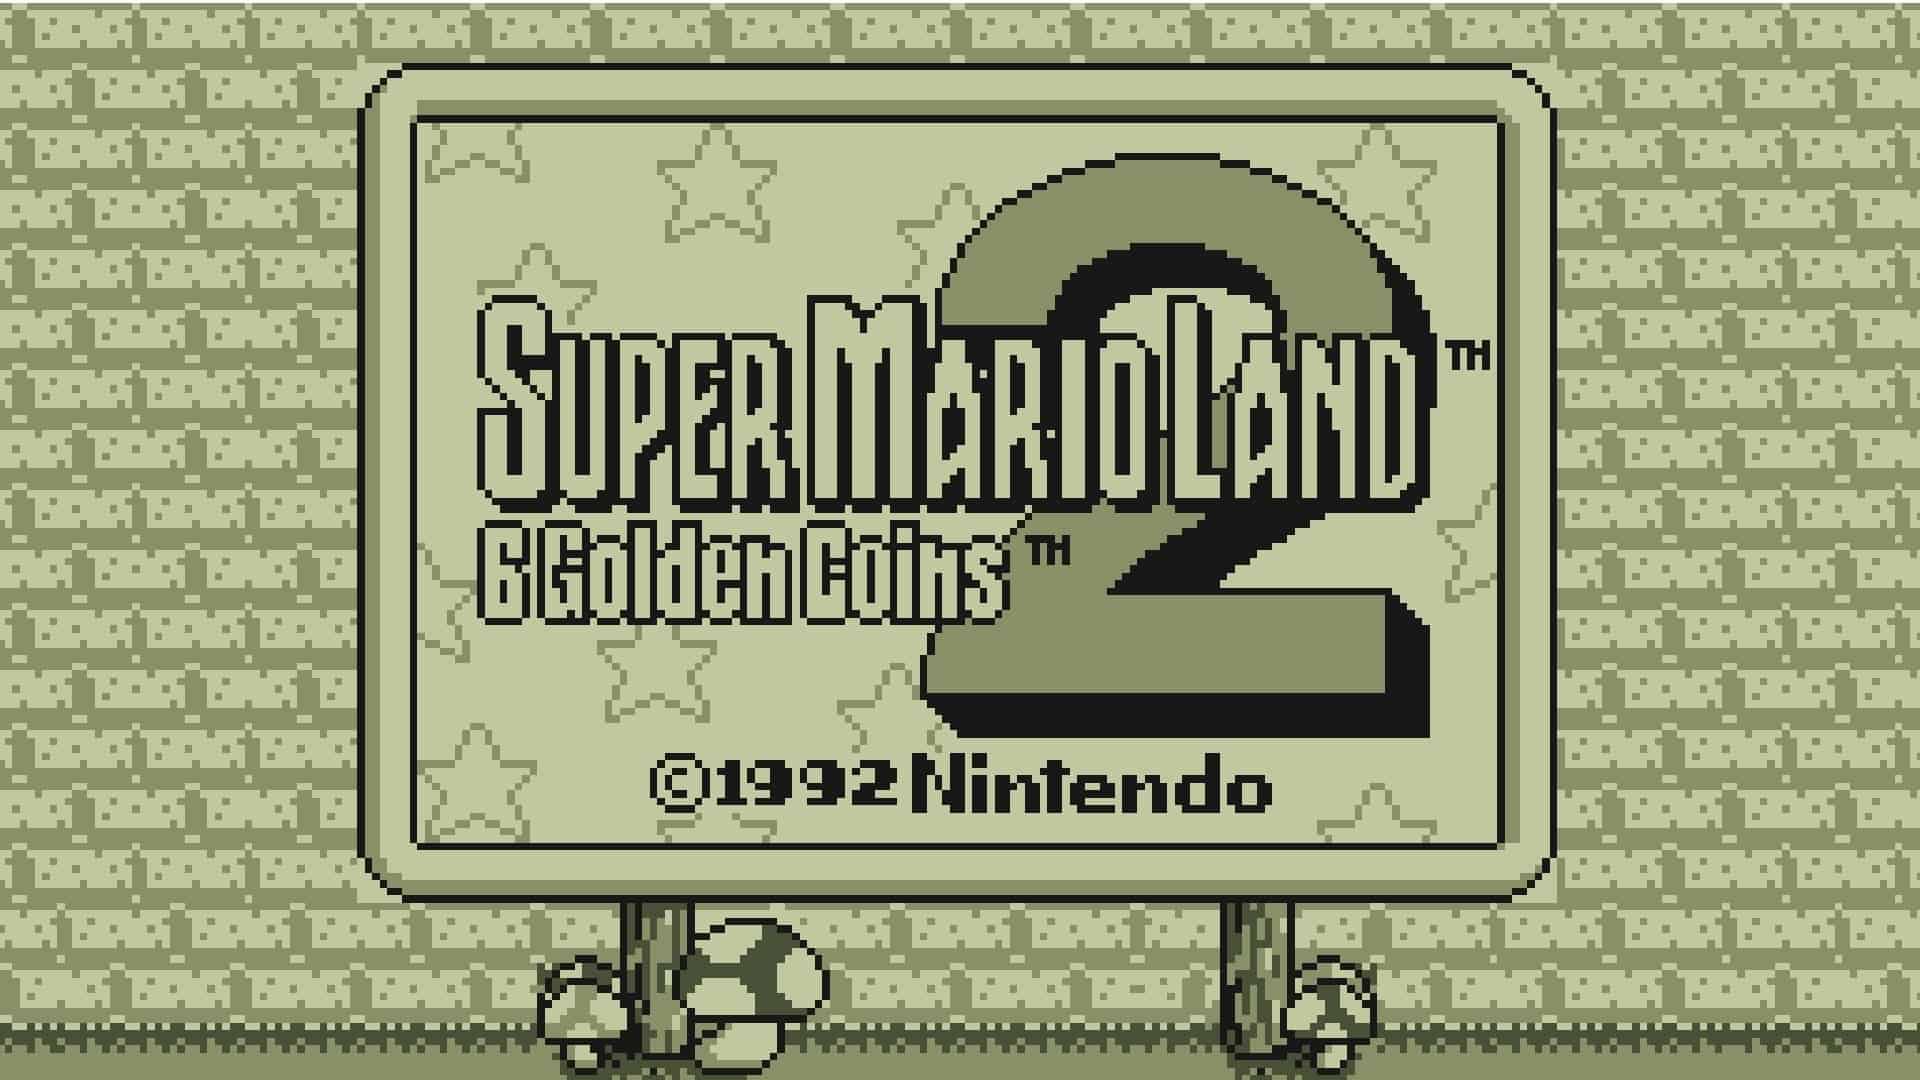 Best Super Mario Games - Super Mario Land 2